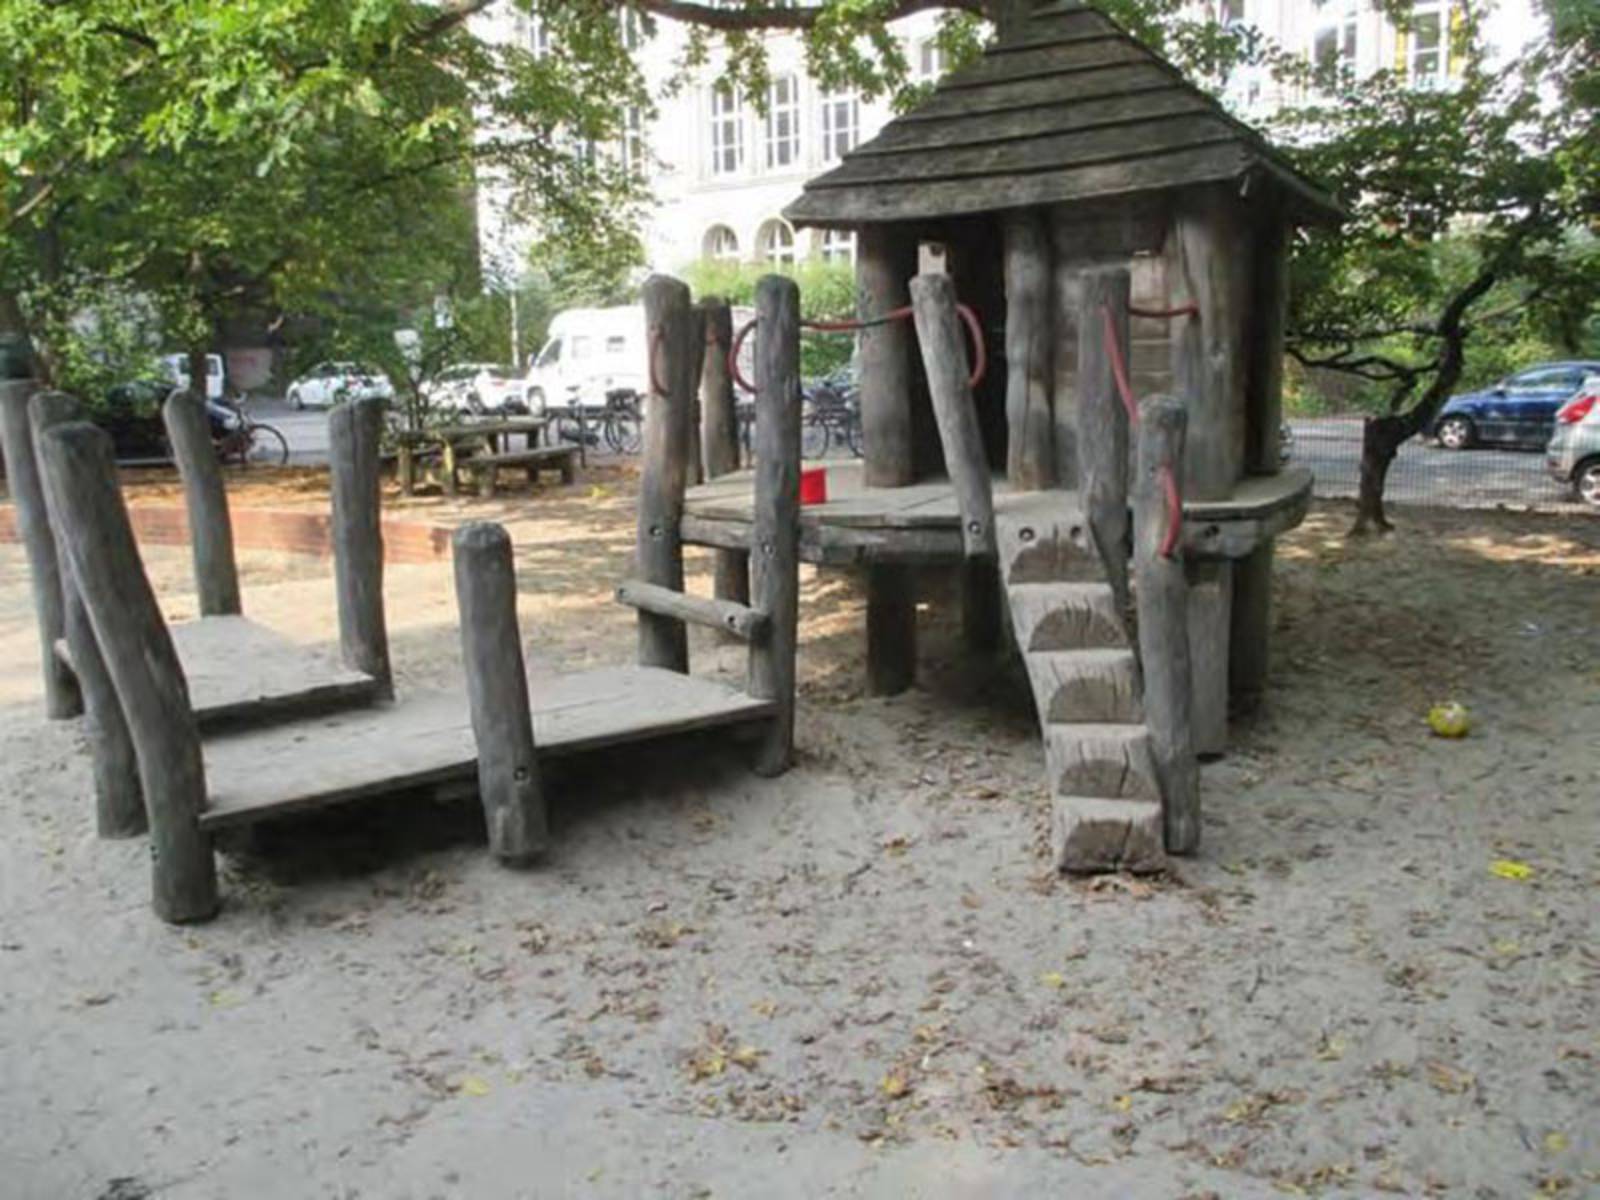 Holzspielgeräte auf sandigem Untergrund auf einem Spielplatz